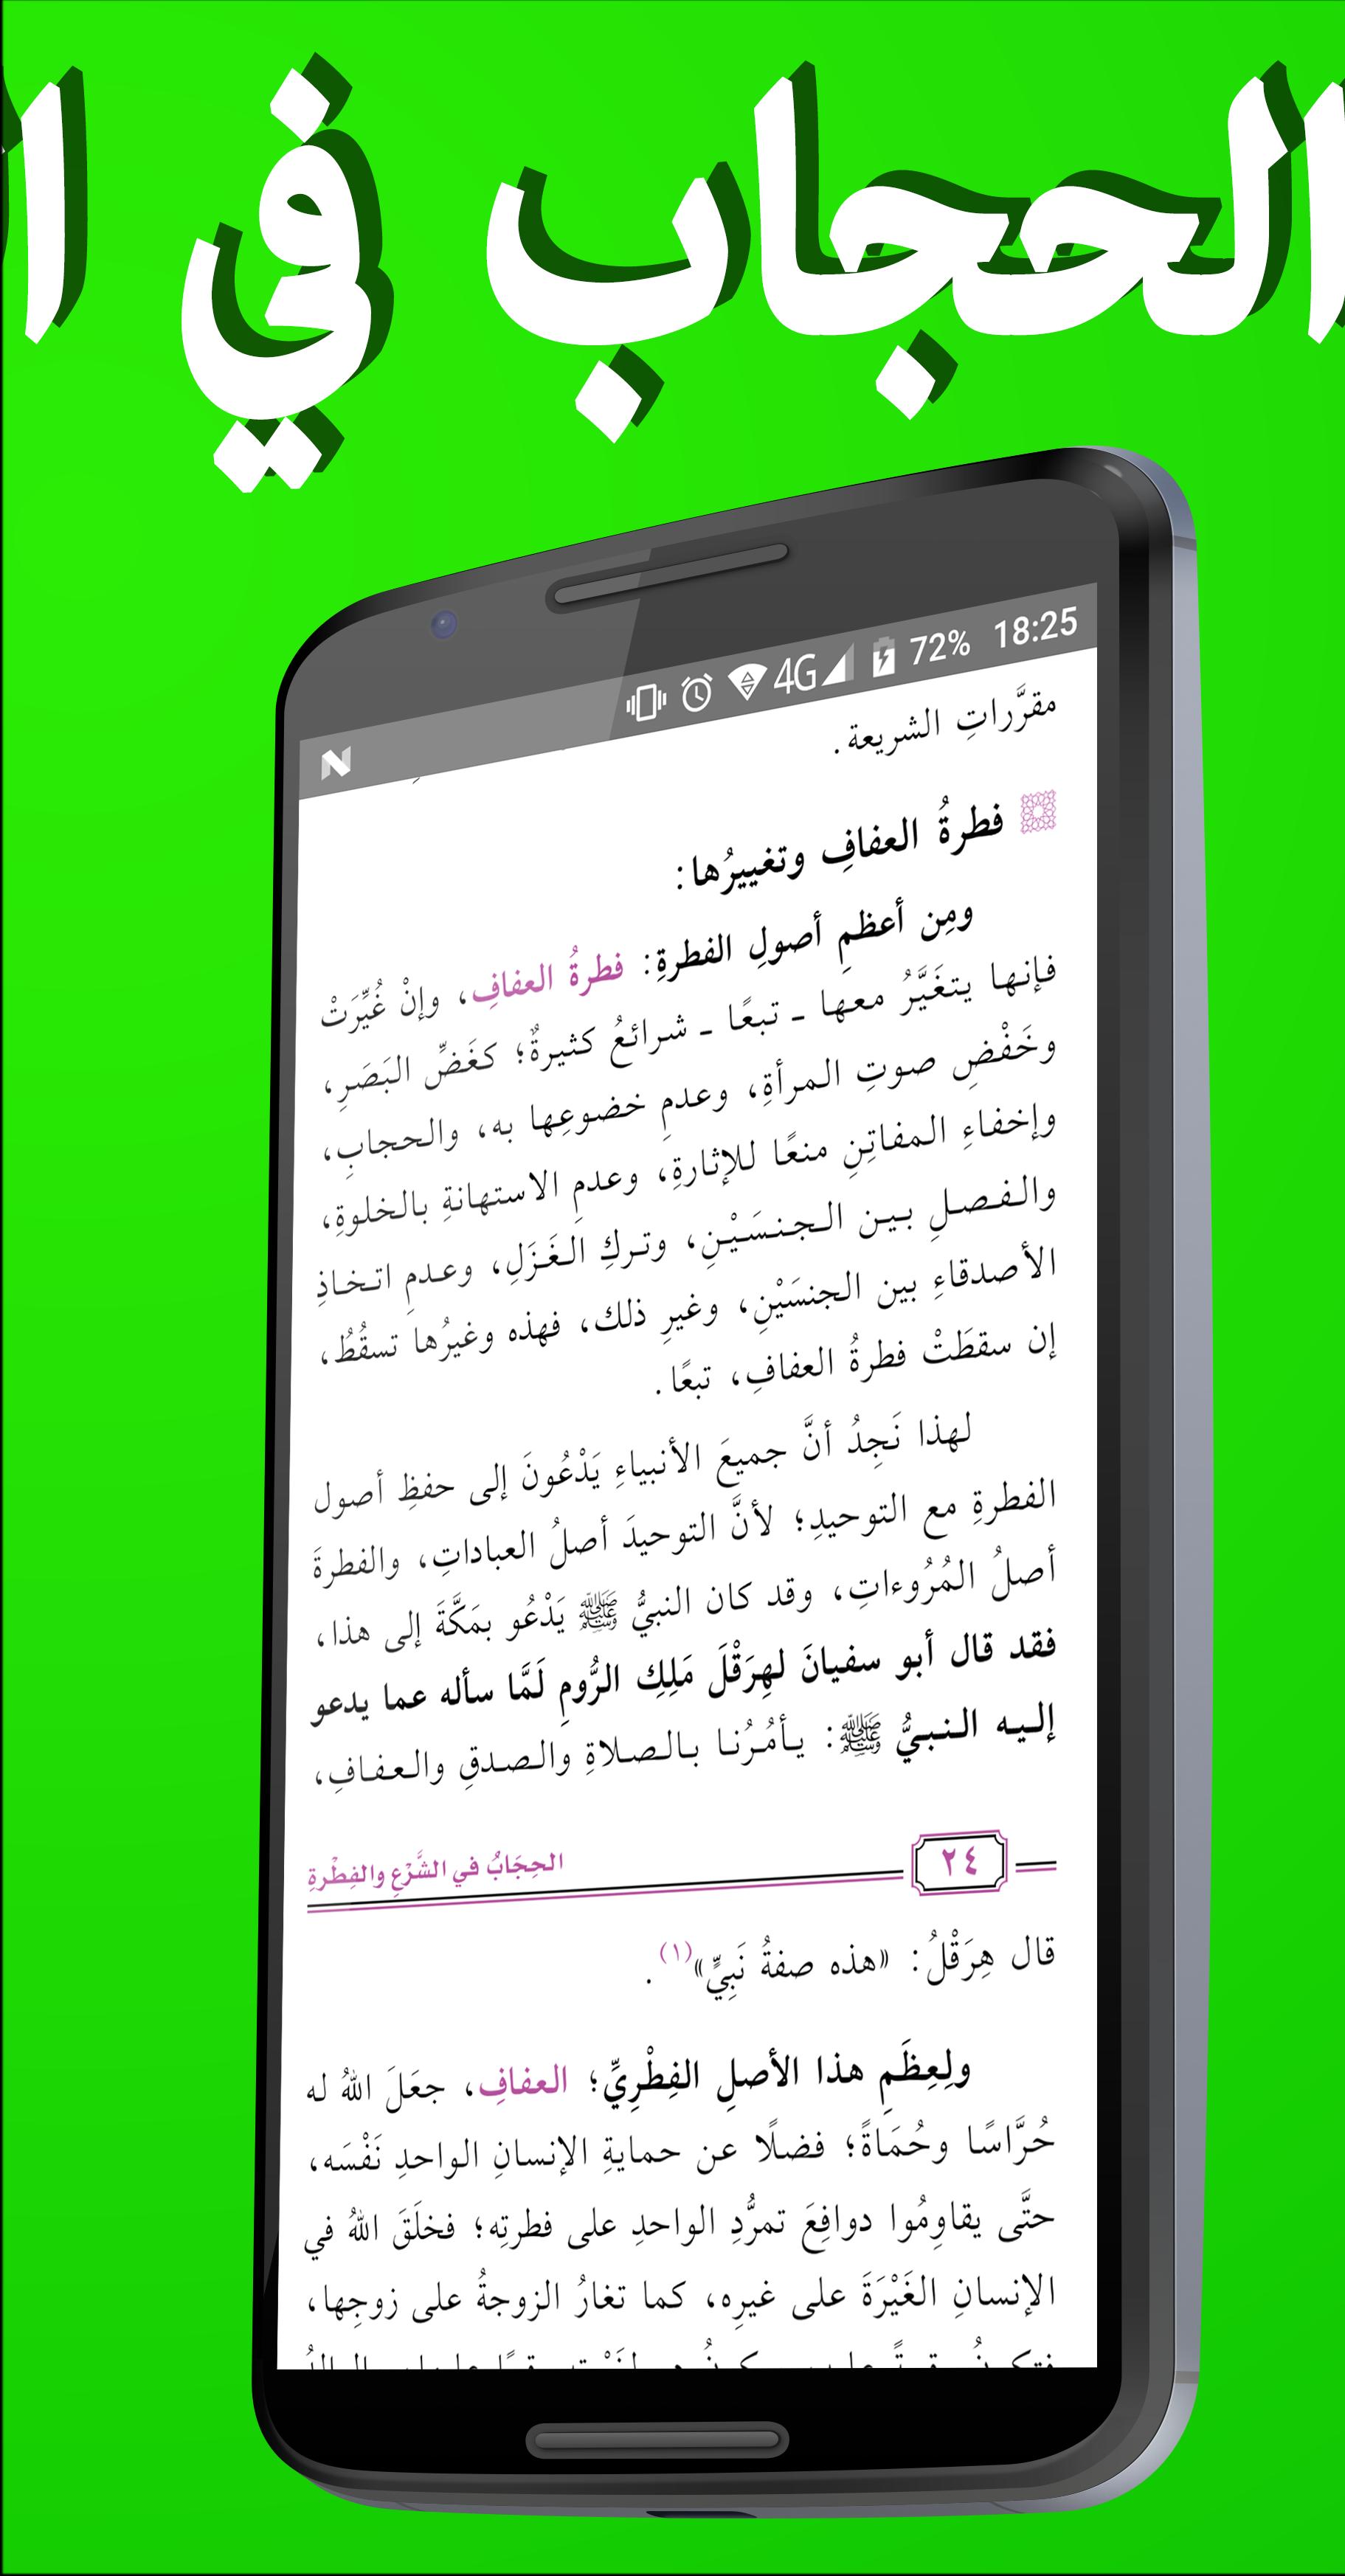 الحجاب في الشرع for Android - APK Download